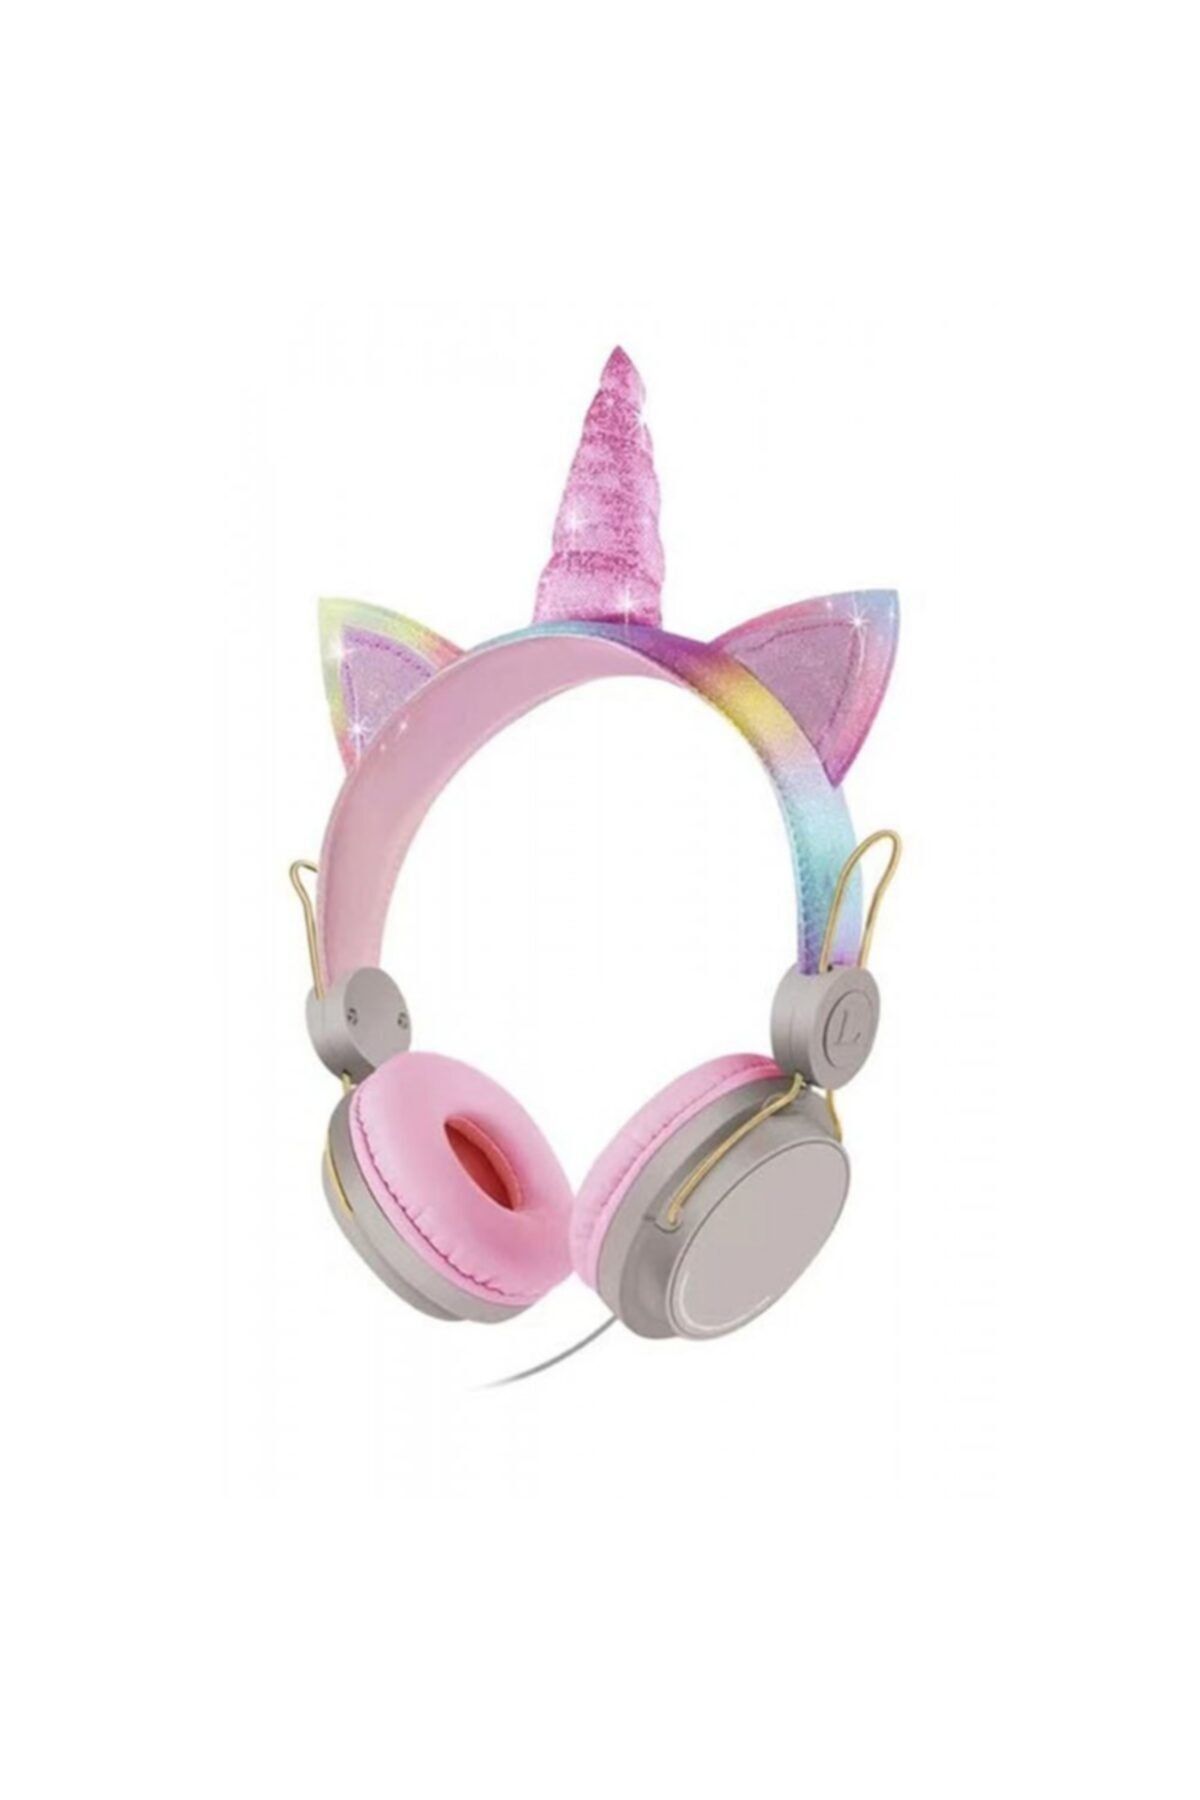 Dtech Kablolu Kulaküstü Kulaklık Unicorn Tasarımlı Mikrofon Renkli Sevimli Simli Şık Tasarım Kız Çocuk-bej